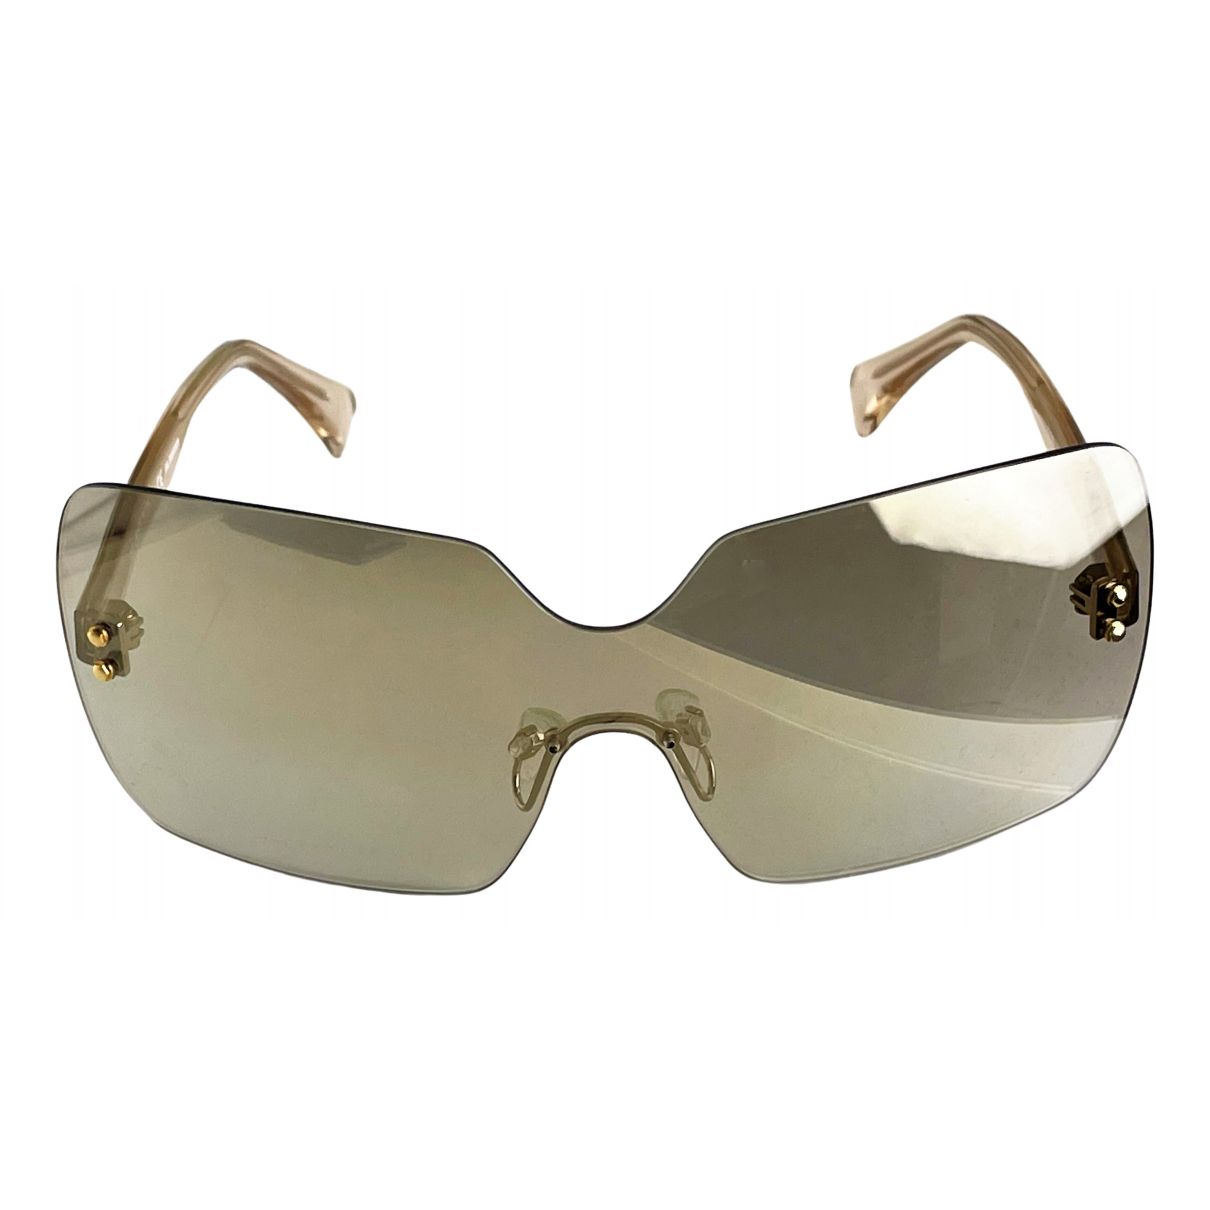 Sunglasses Jil Sander - Vintage